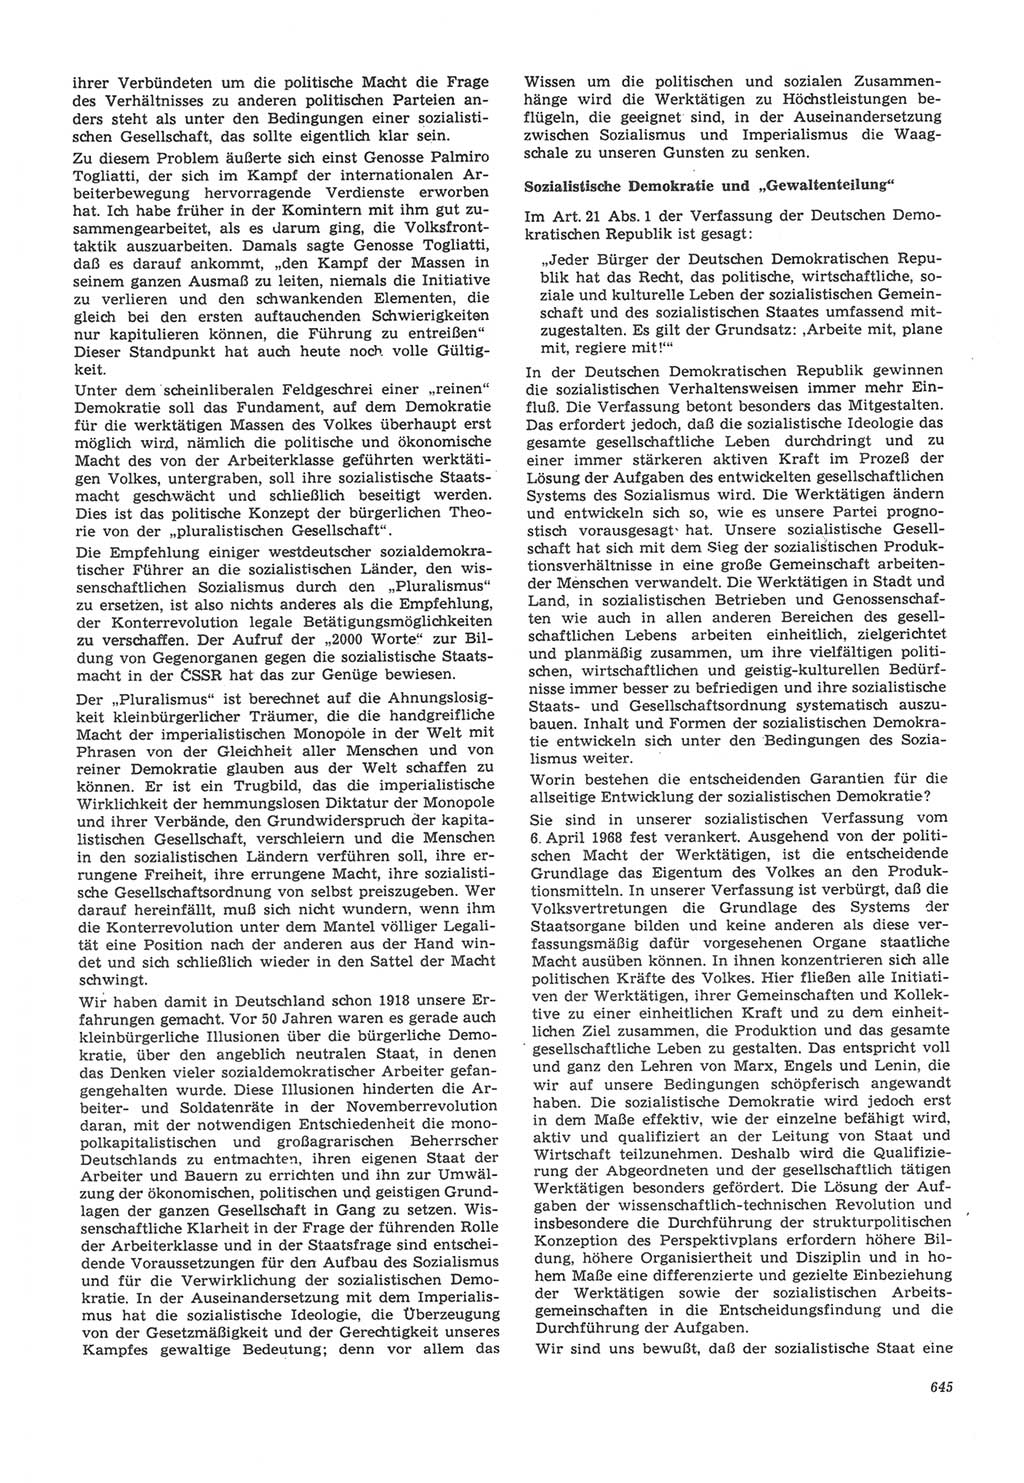 Neue Justiz (NJ), Zeitschrift für Recht und Rechtswissenschaft [Deutsche Demokratische Republik (DDR)], 22. Jahrgang 1968, Seite 645 (NJ DDR 1968, S. 645)